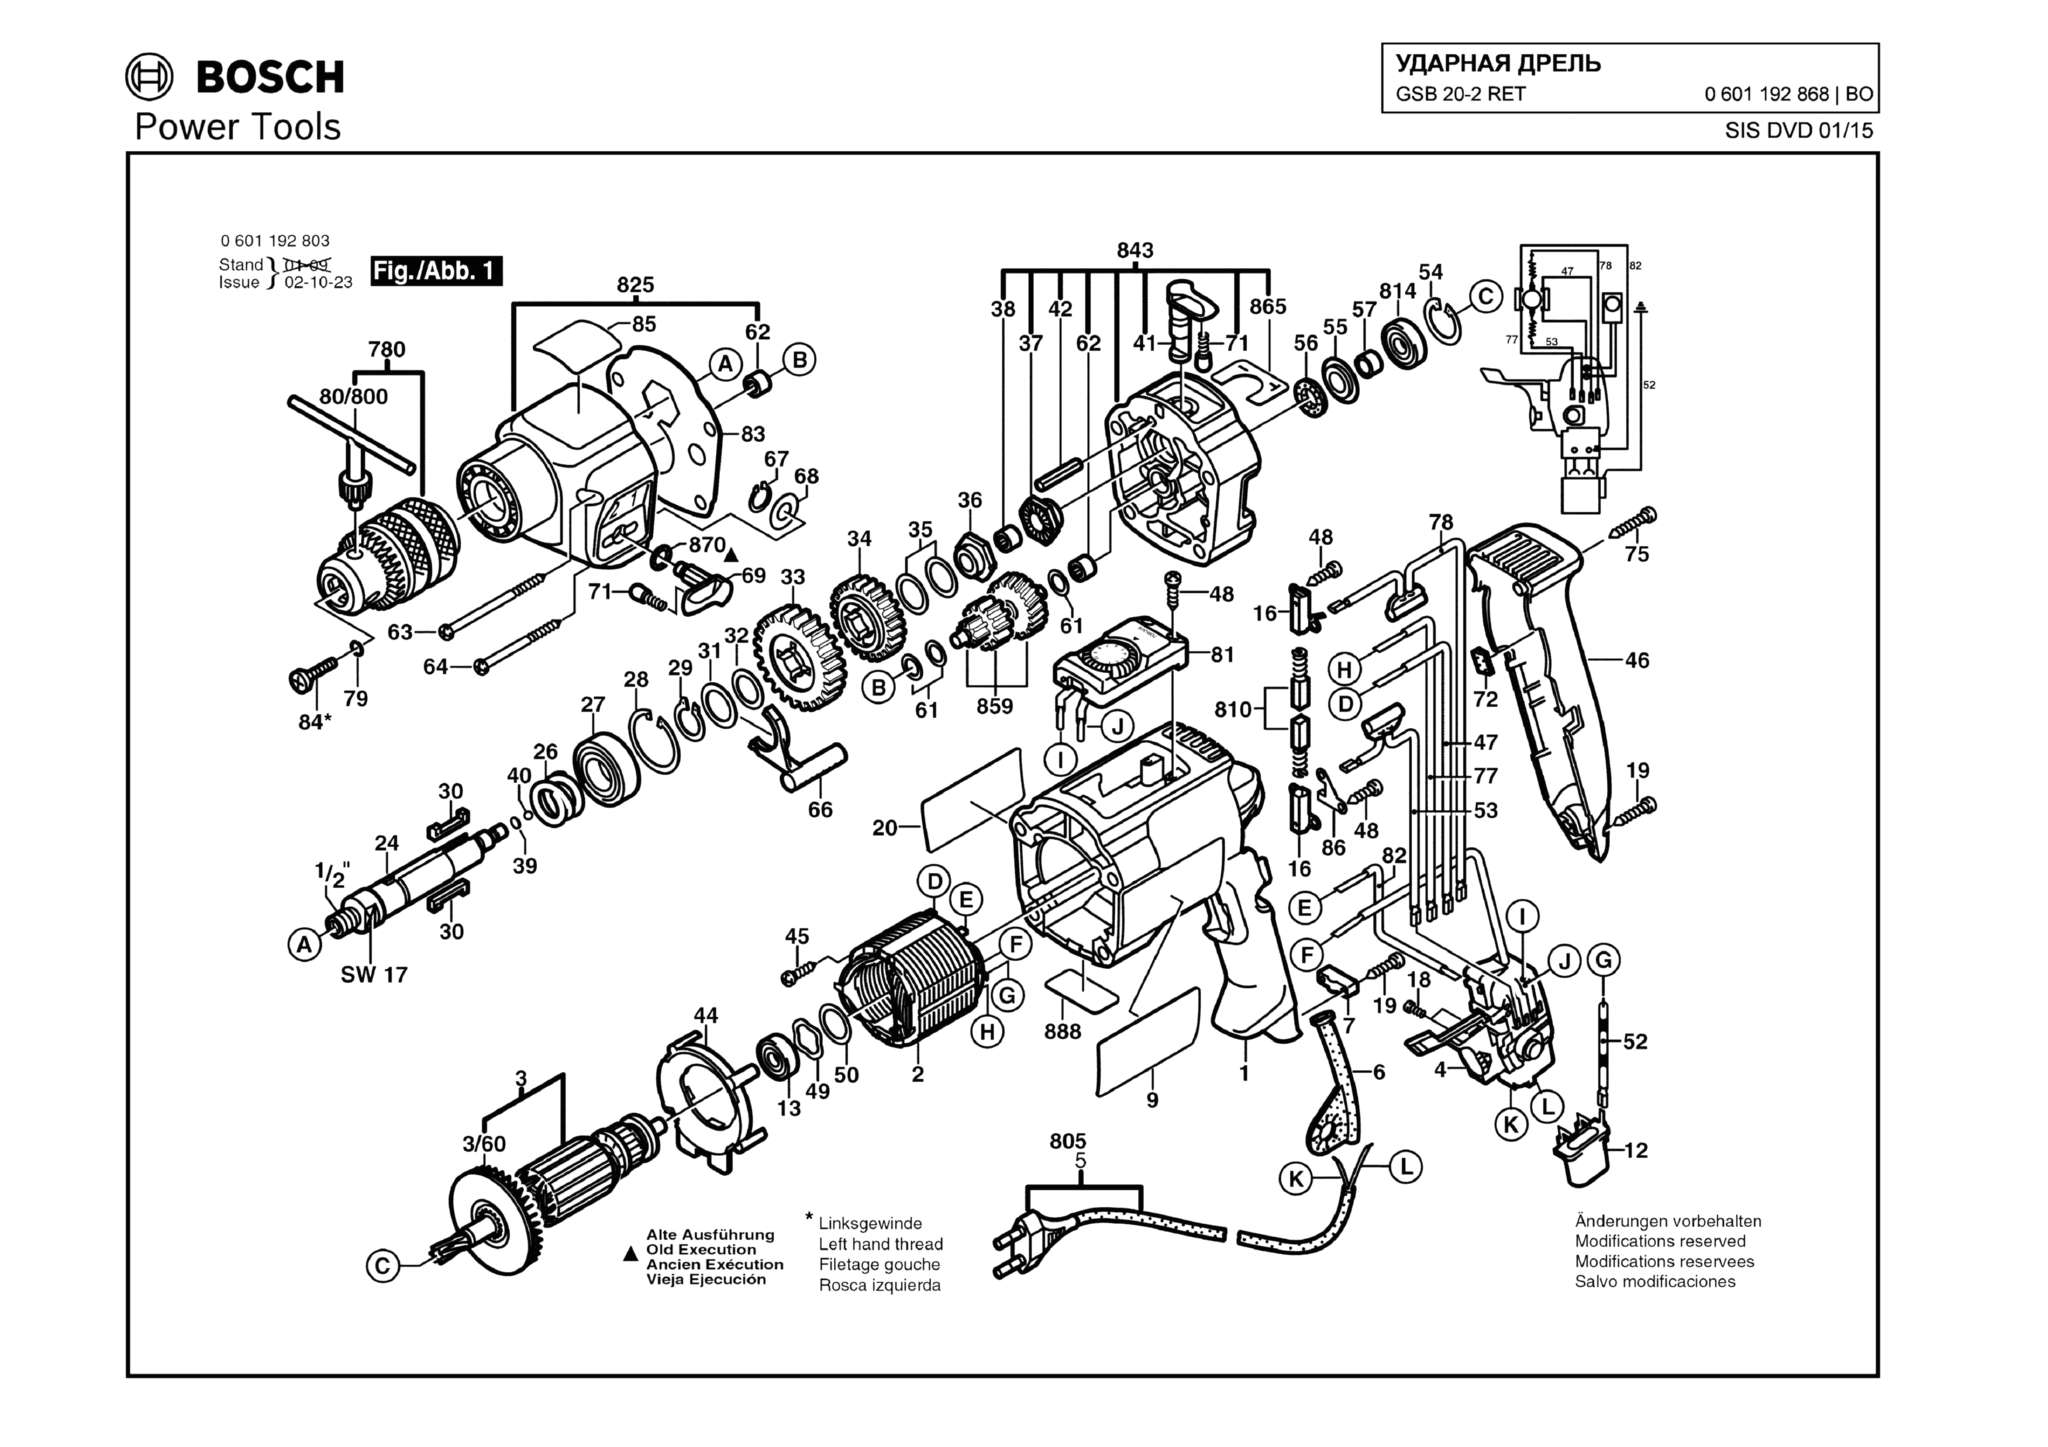 Запчасти, схема и деталировка Bosch GSB 20-2 RET (ТИП 0601192868)